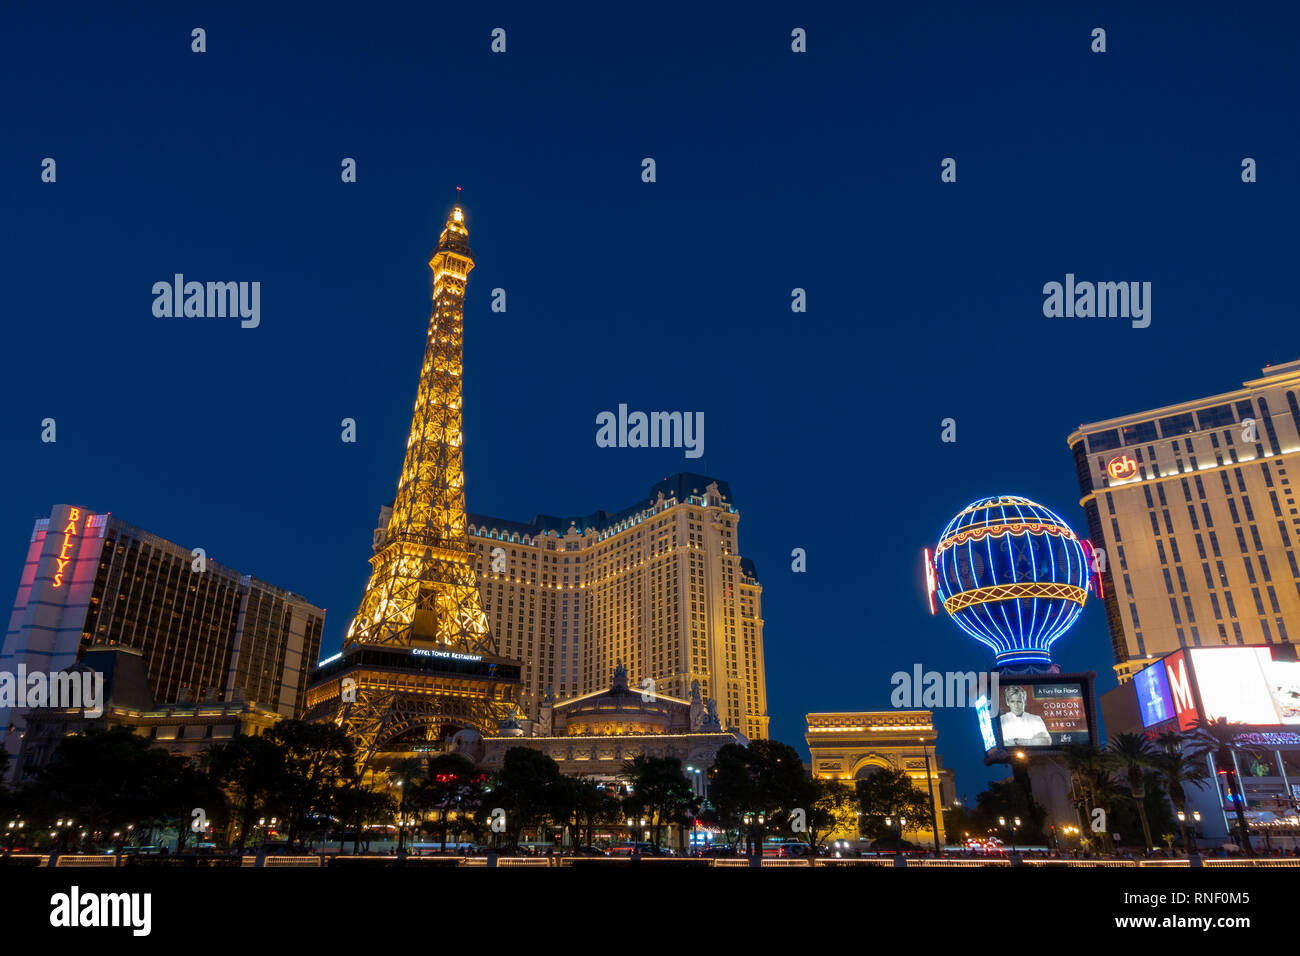 Paris Las Vegas at night, Las Vegas, Nevada, United States. Stock Photo